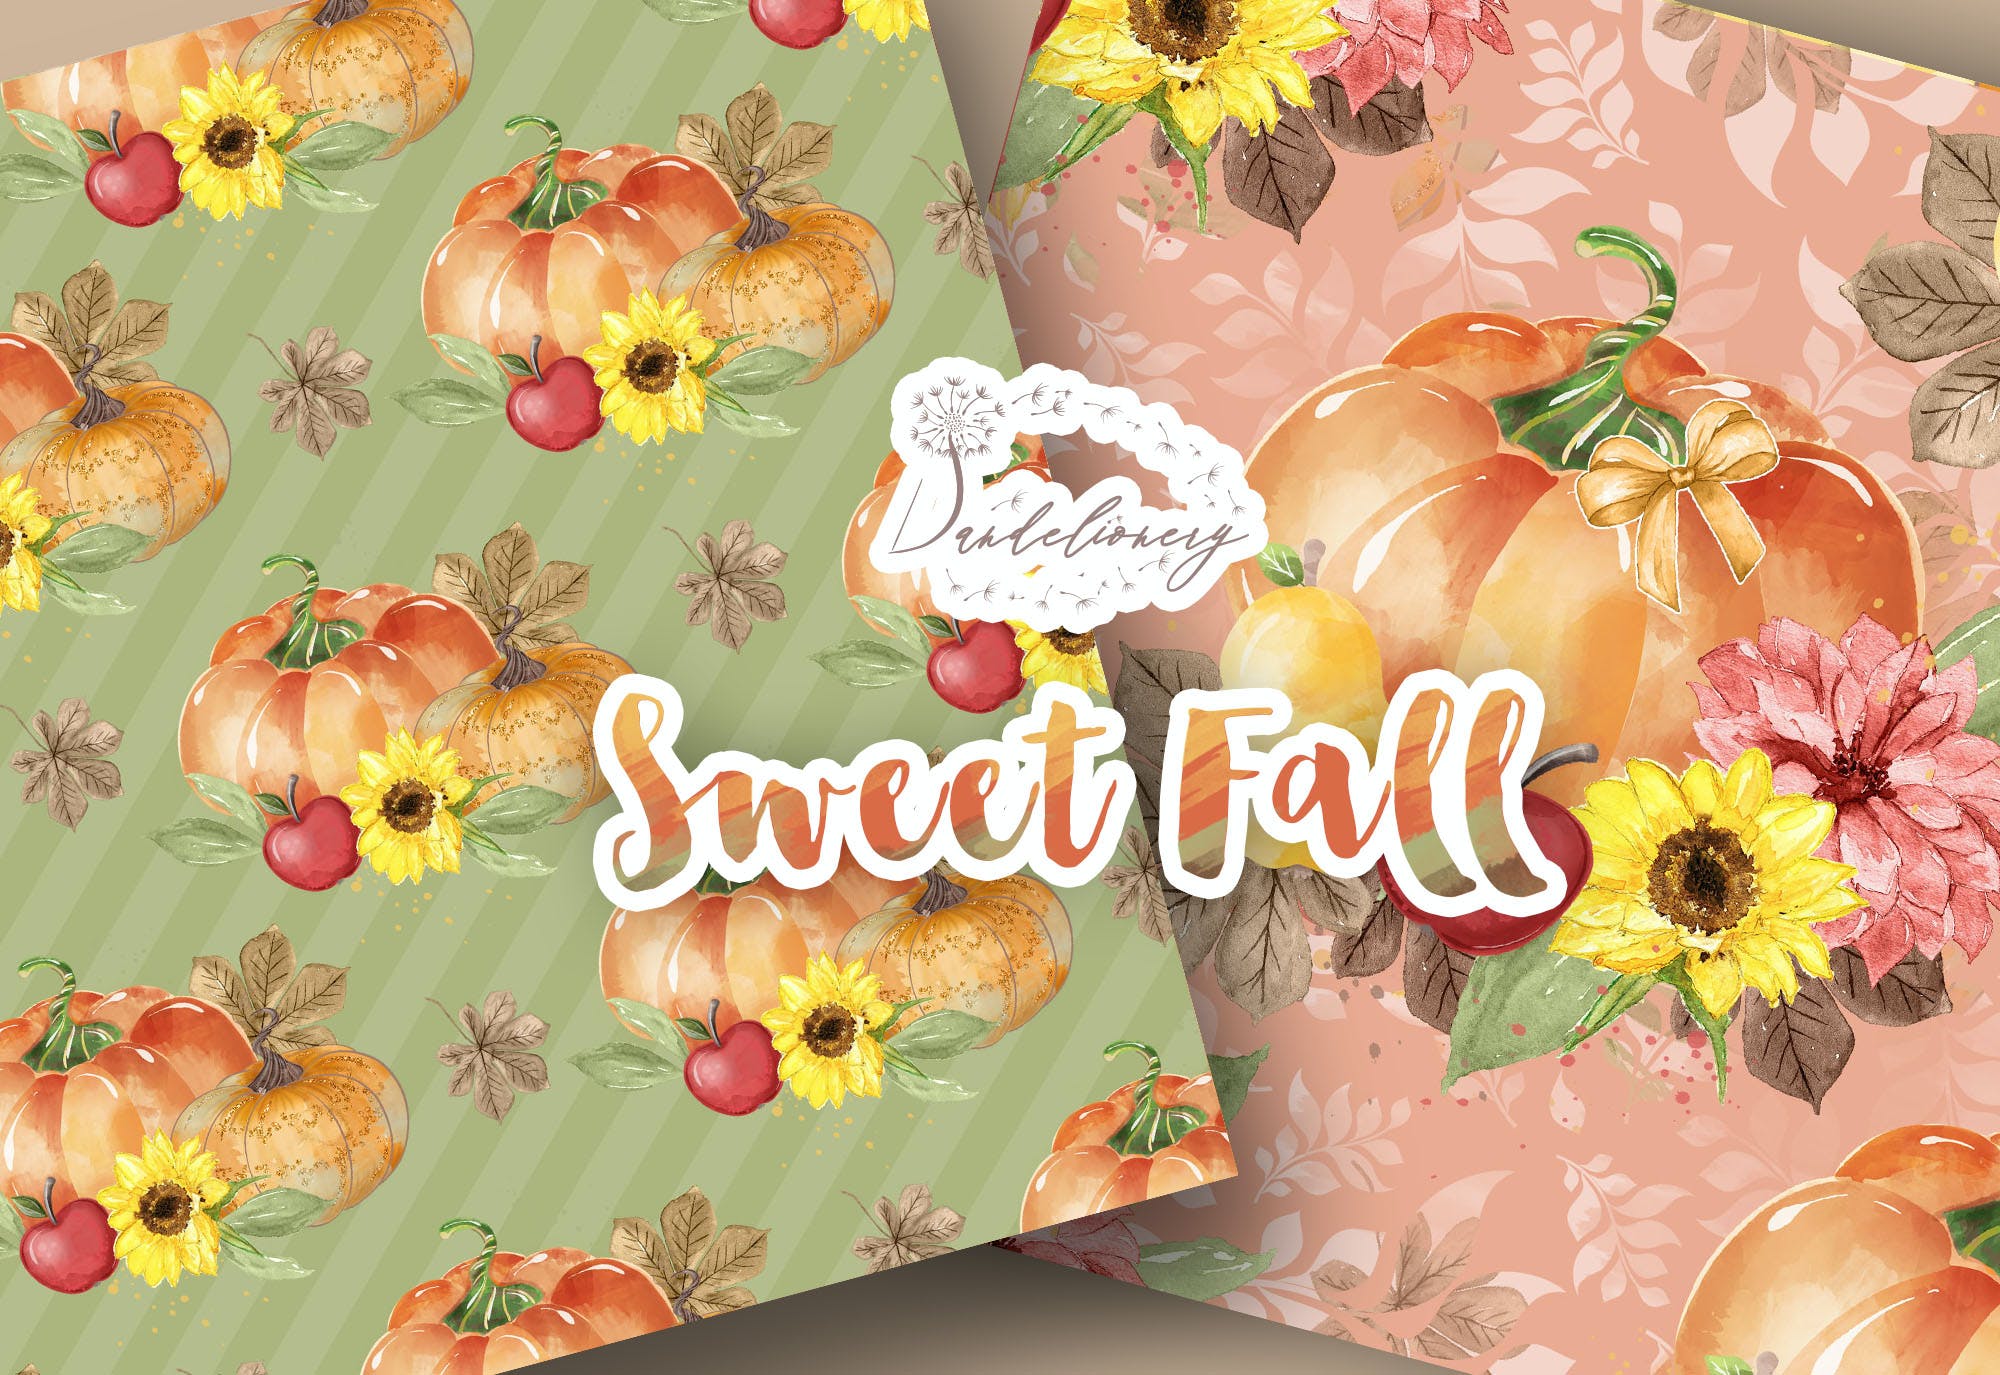 水彩秋天南瓜图案背景素材包 Sweet Fall Pumpkin digital paper pack设计素材模板